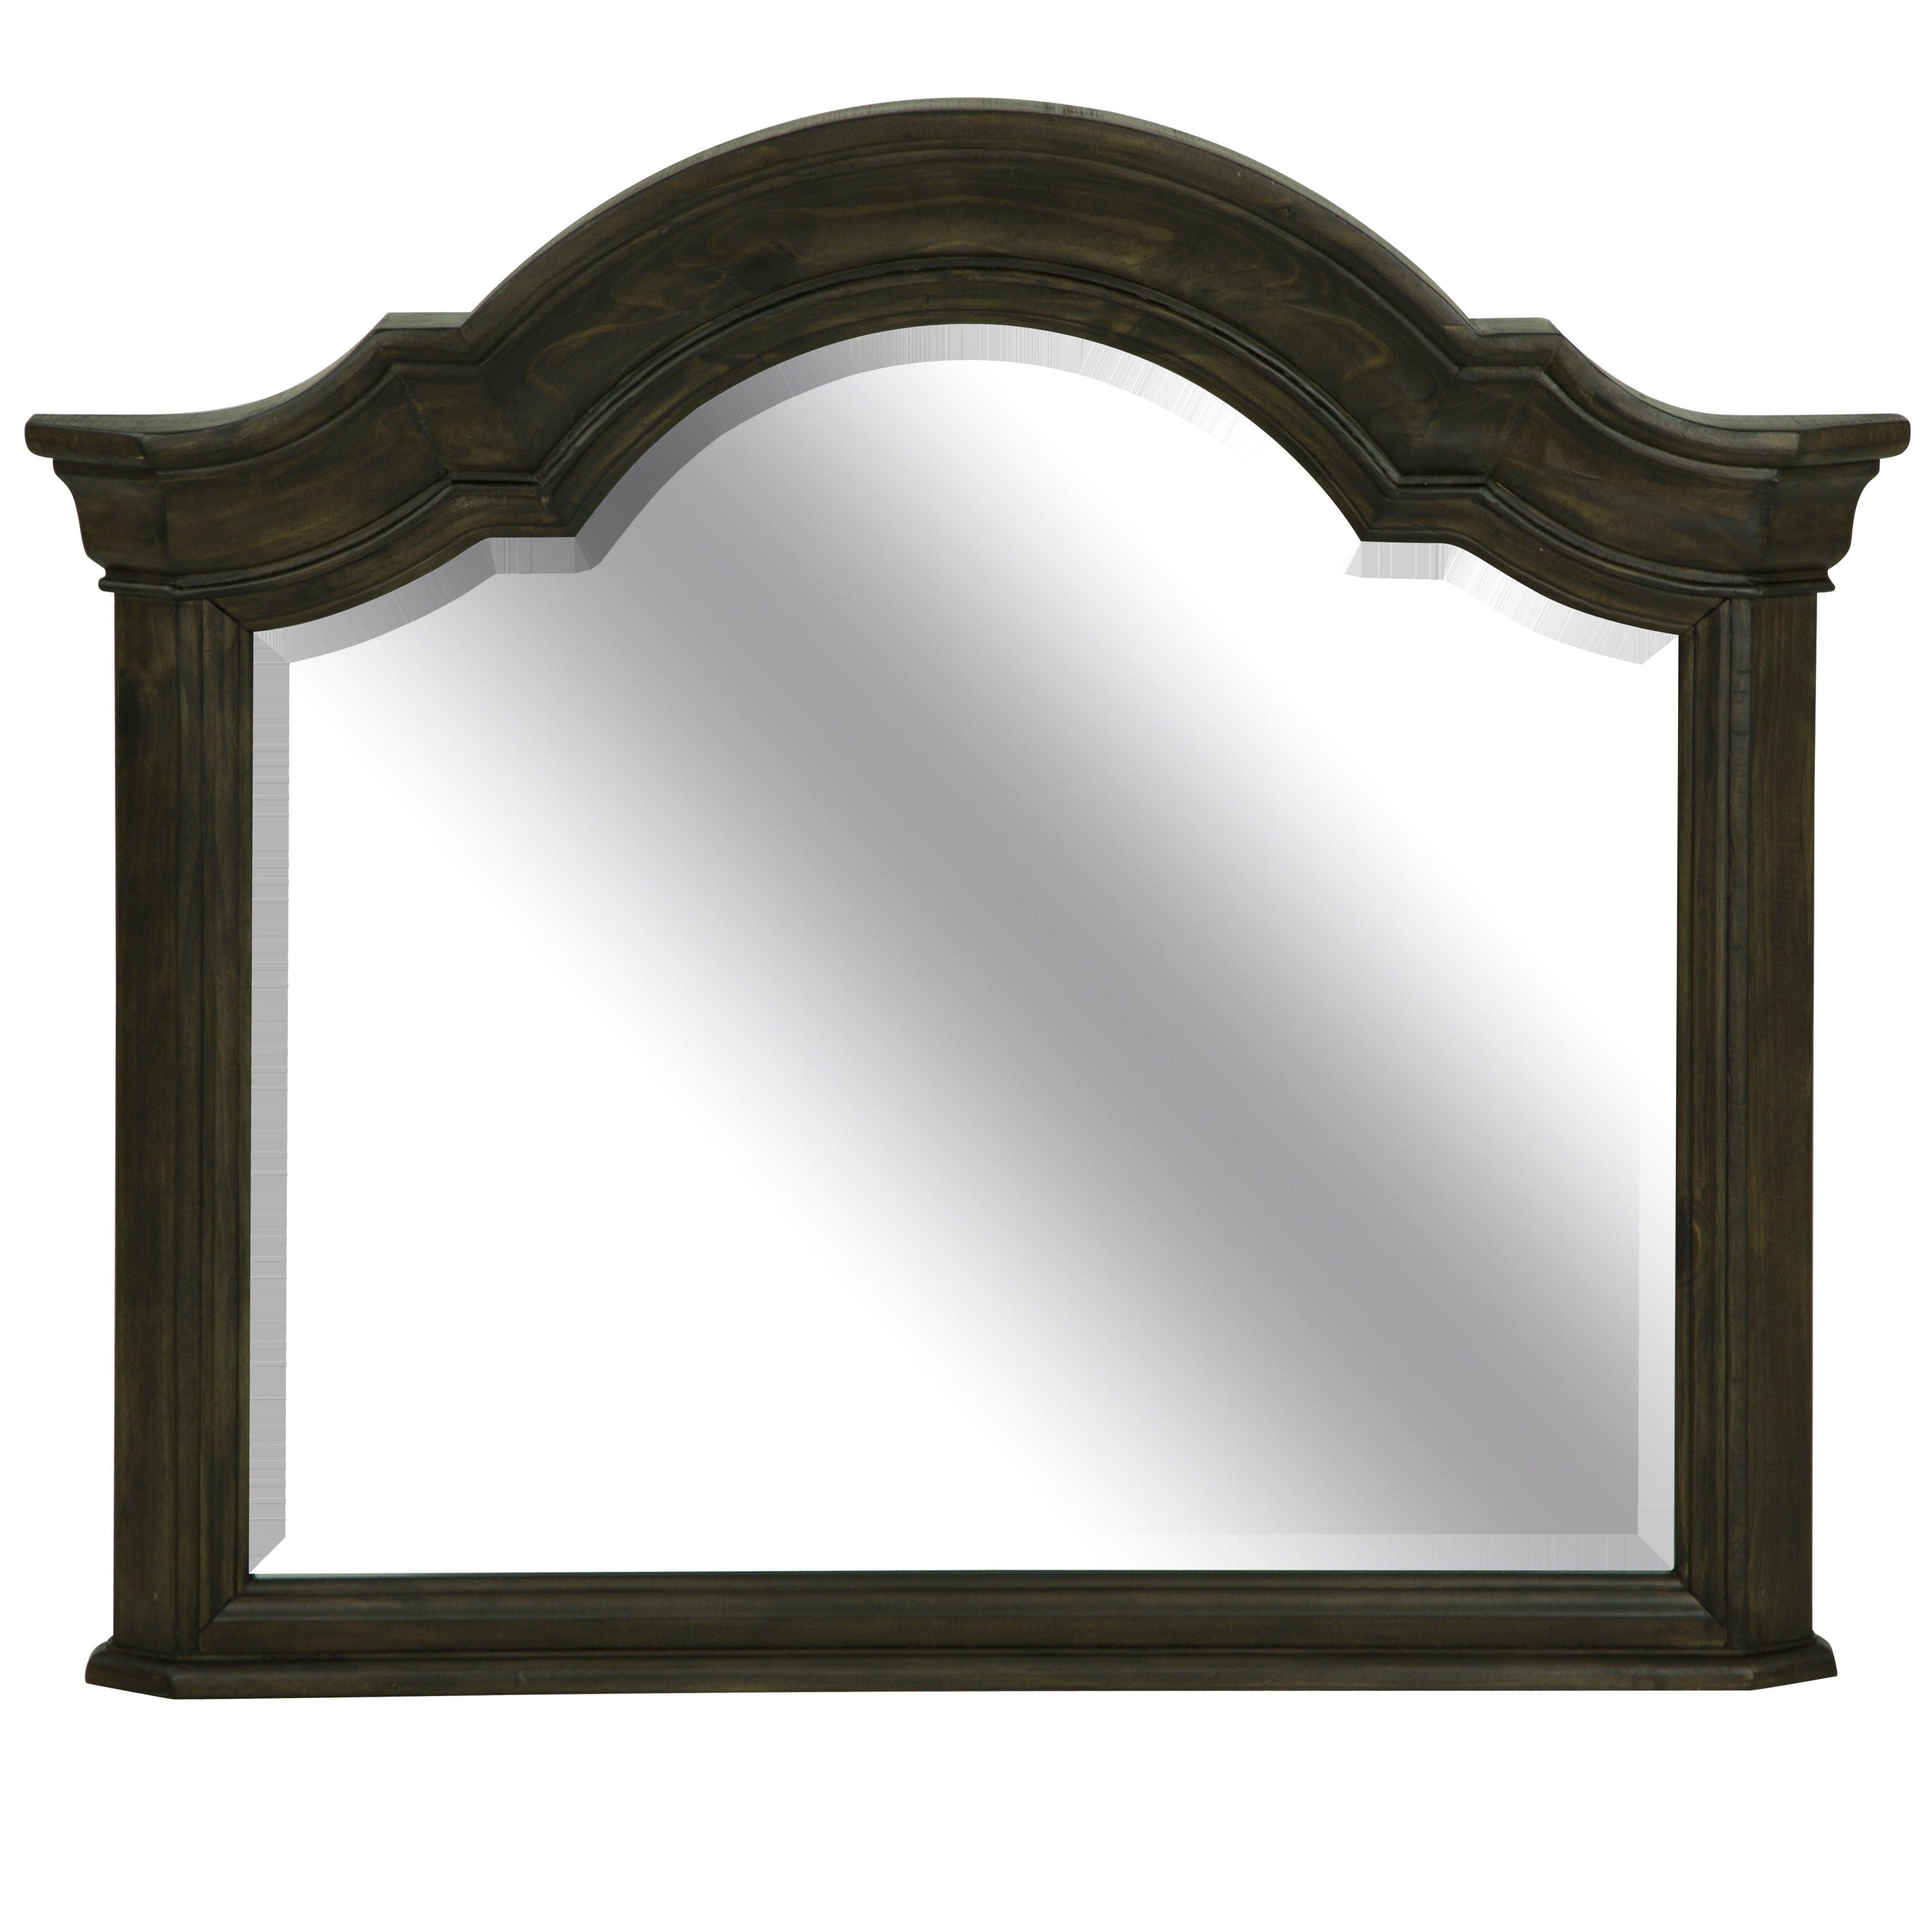 Magnussen Furniture - Bellamy - Shaped Mirror - Peppercorn - 5th Avenue Furniture